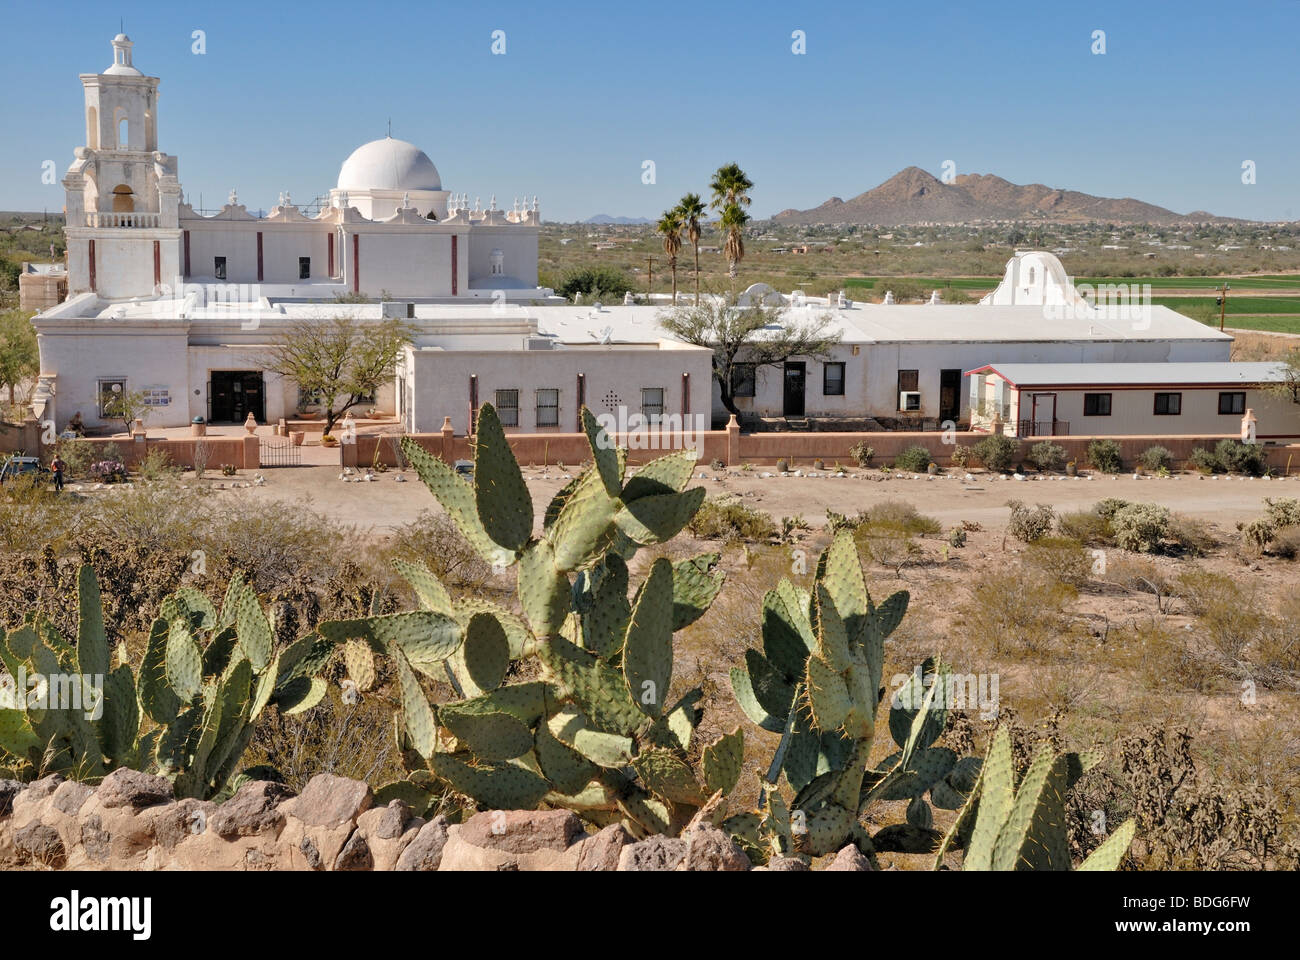 La missione di San Xavier del Bac, noto anche come "colomba bianca del deserto", a sud di Tucson, Arizona, Stati Uniti d'America Foto Stock